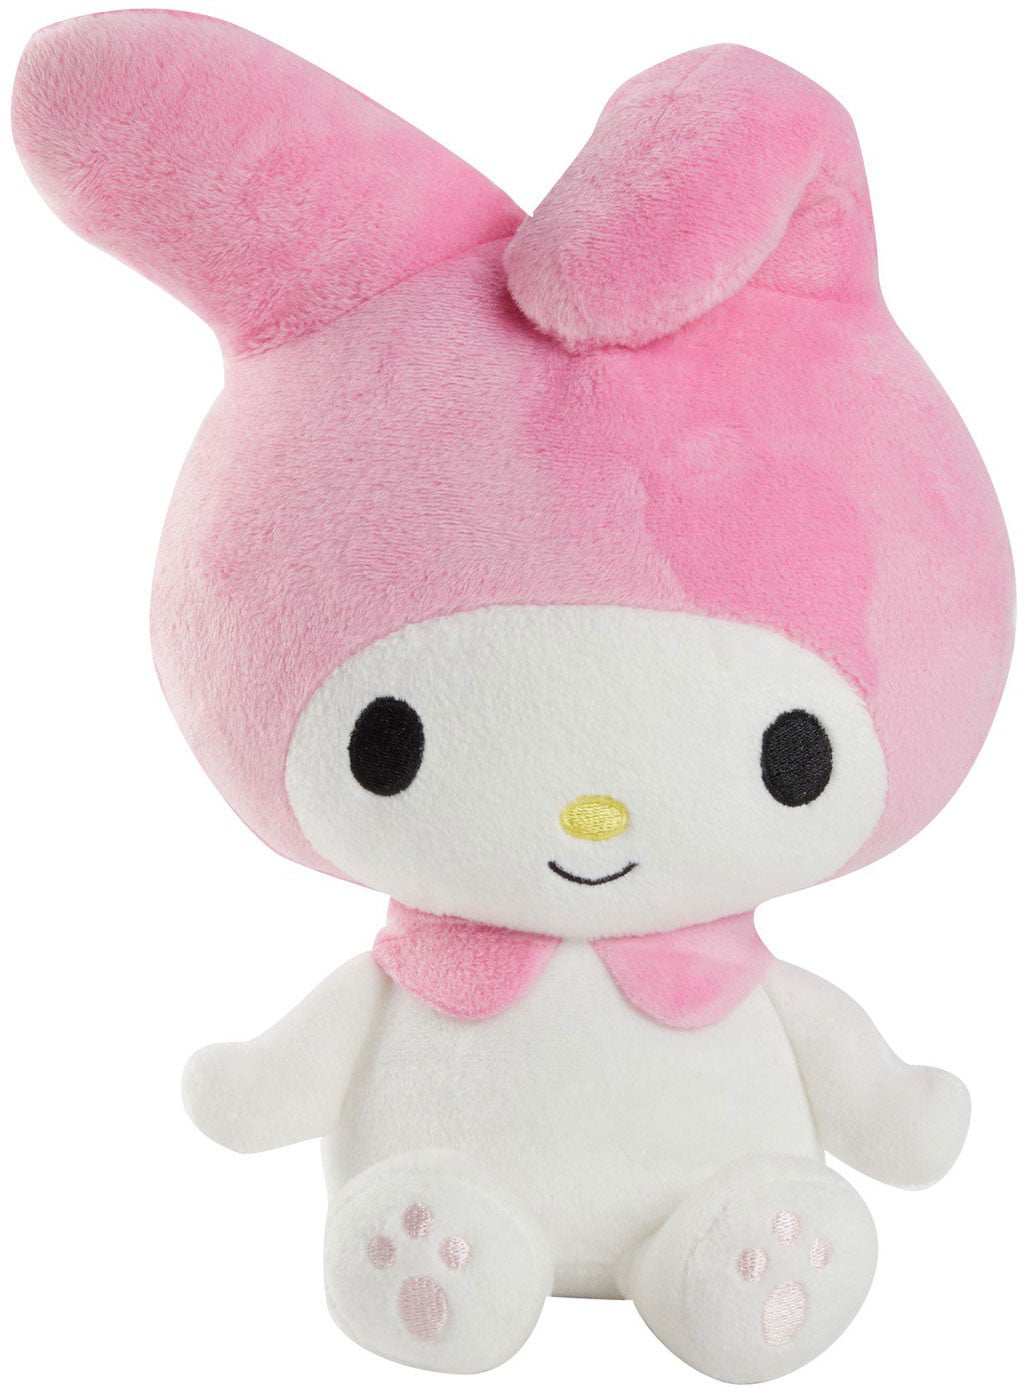 Hello Kitty and Friends Talking Mini Plush Mascot My Melody Figure Kids Gift